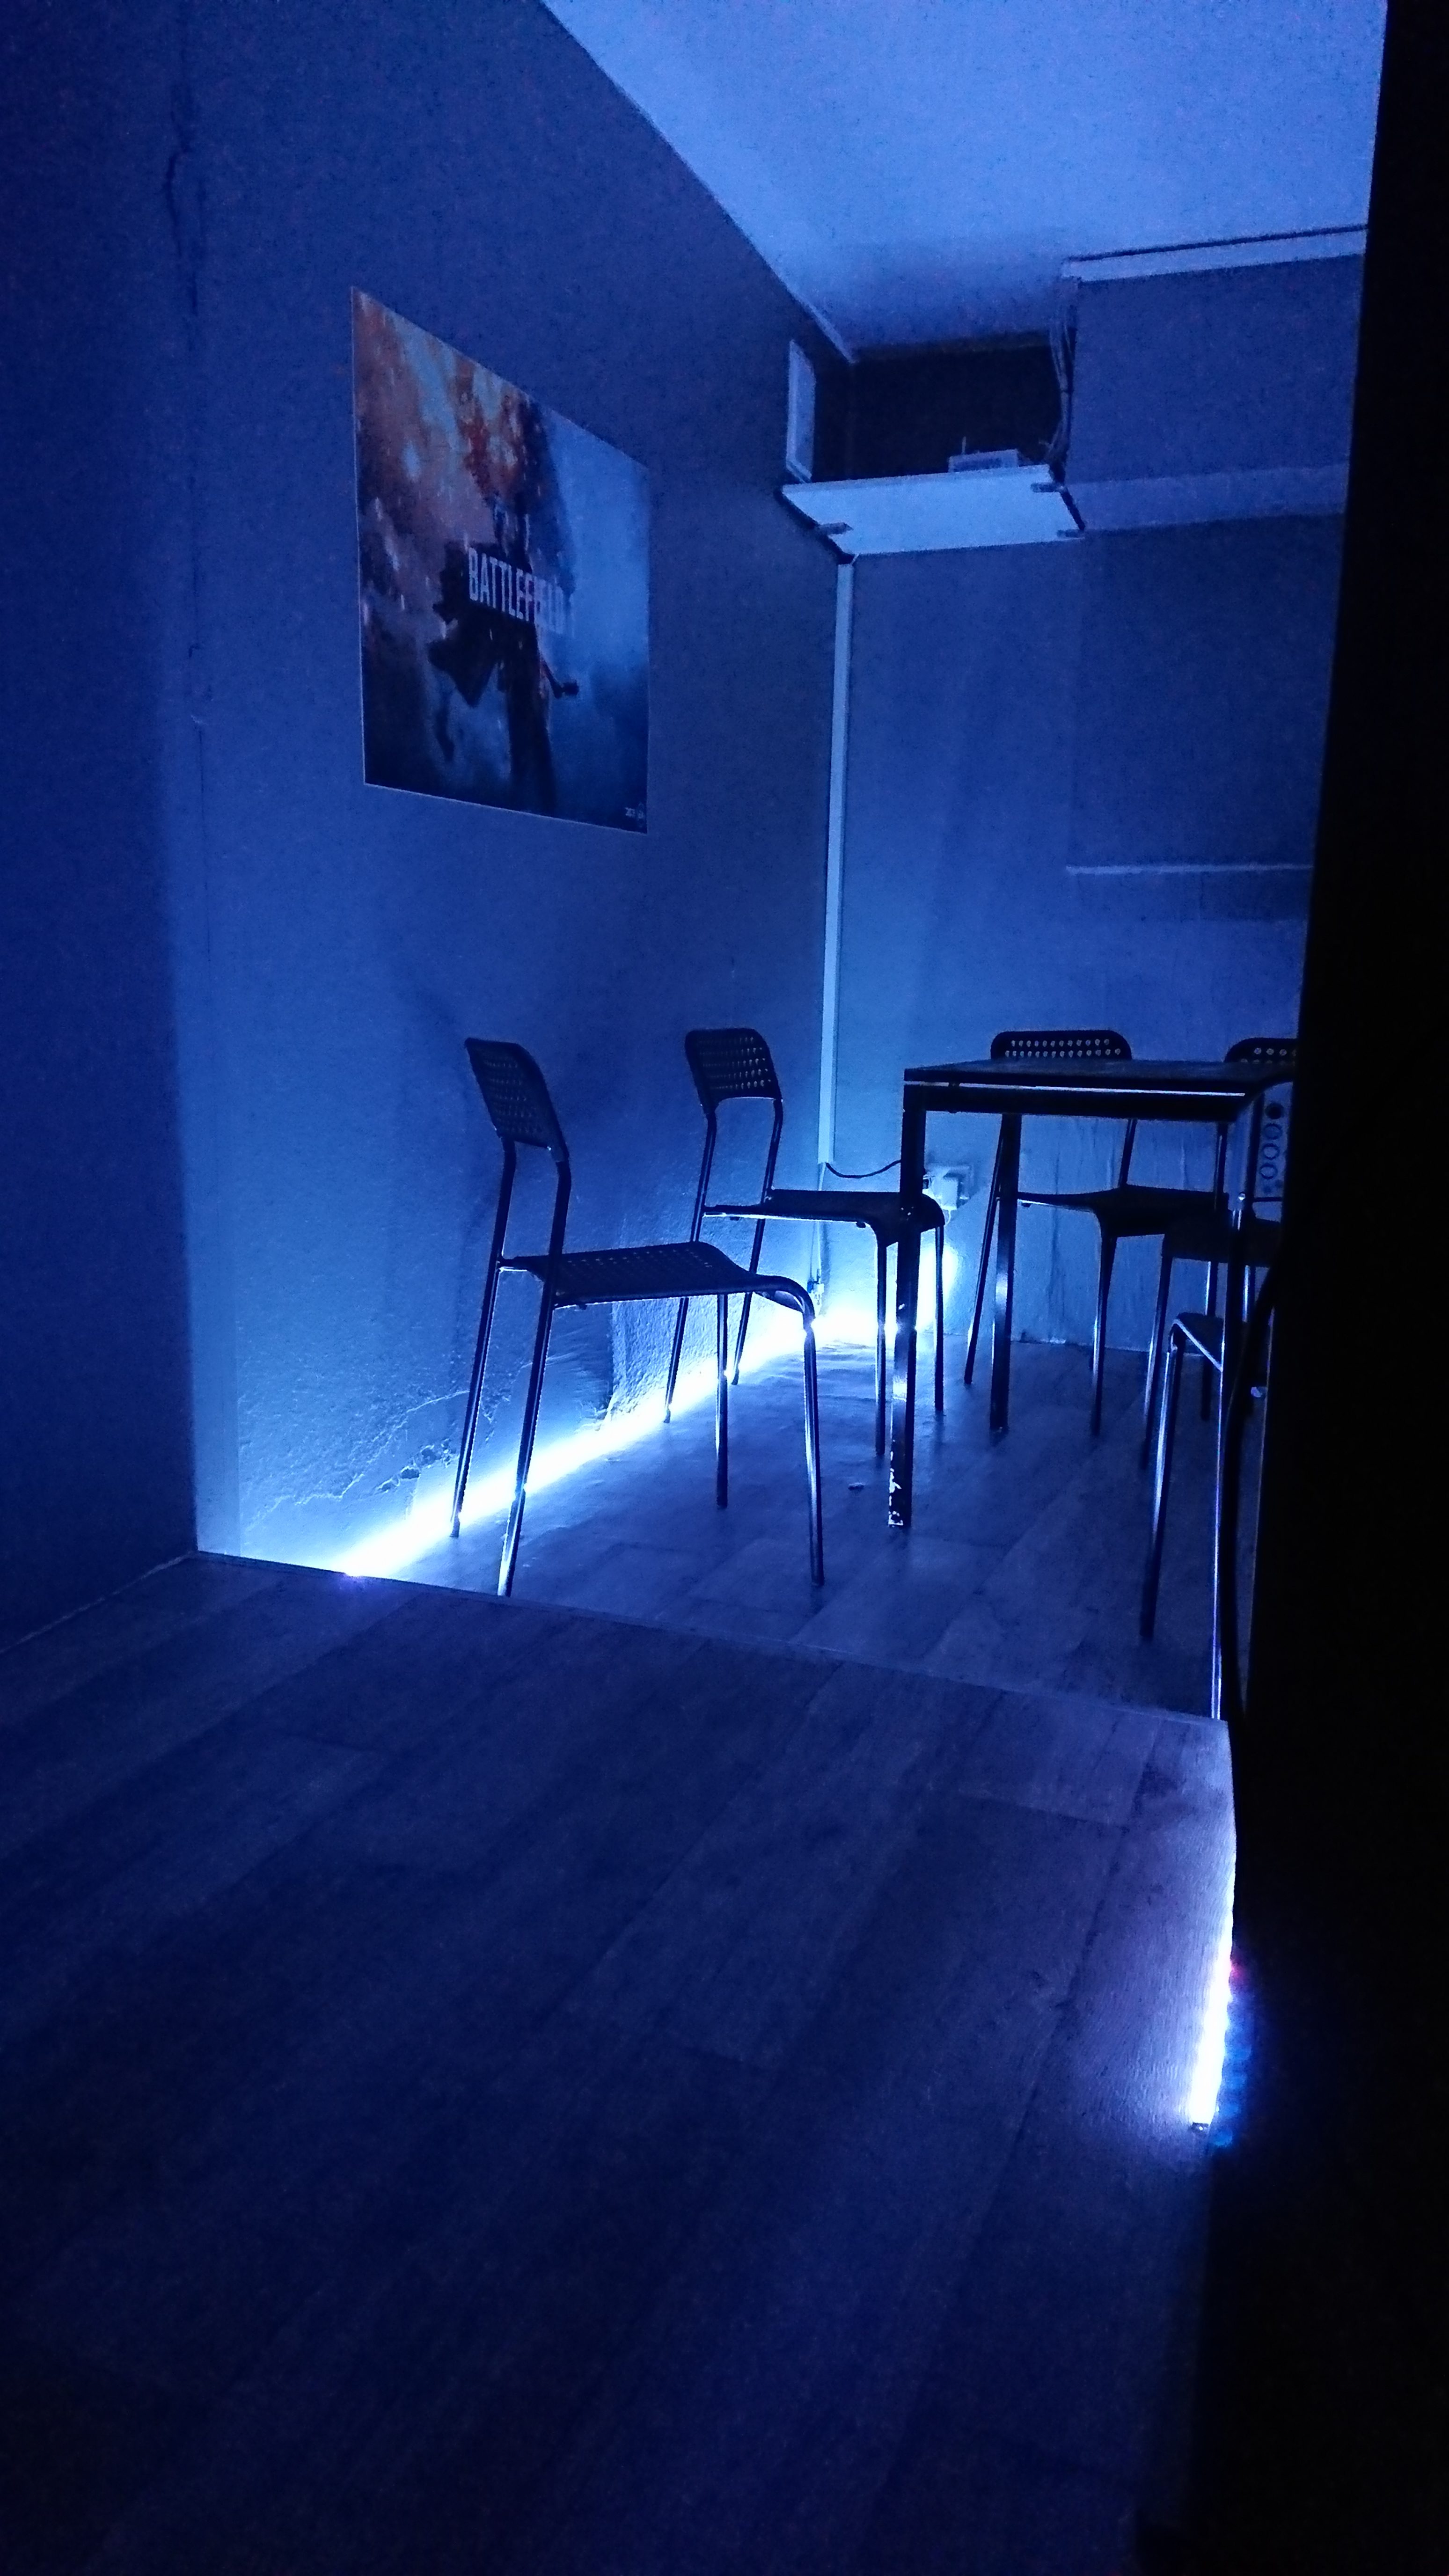 Фотография, сделанная на Xperia XZs в слабоосвещённом помещении